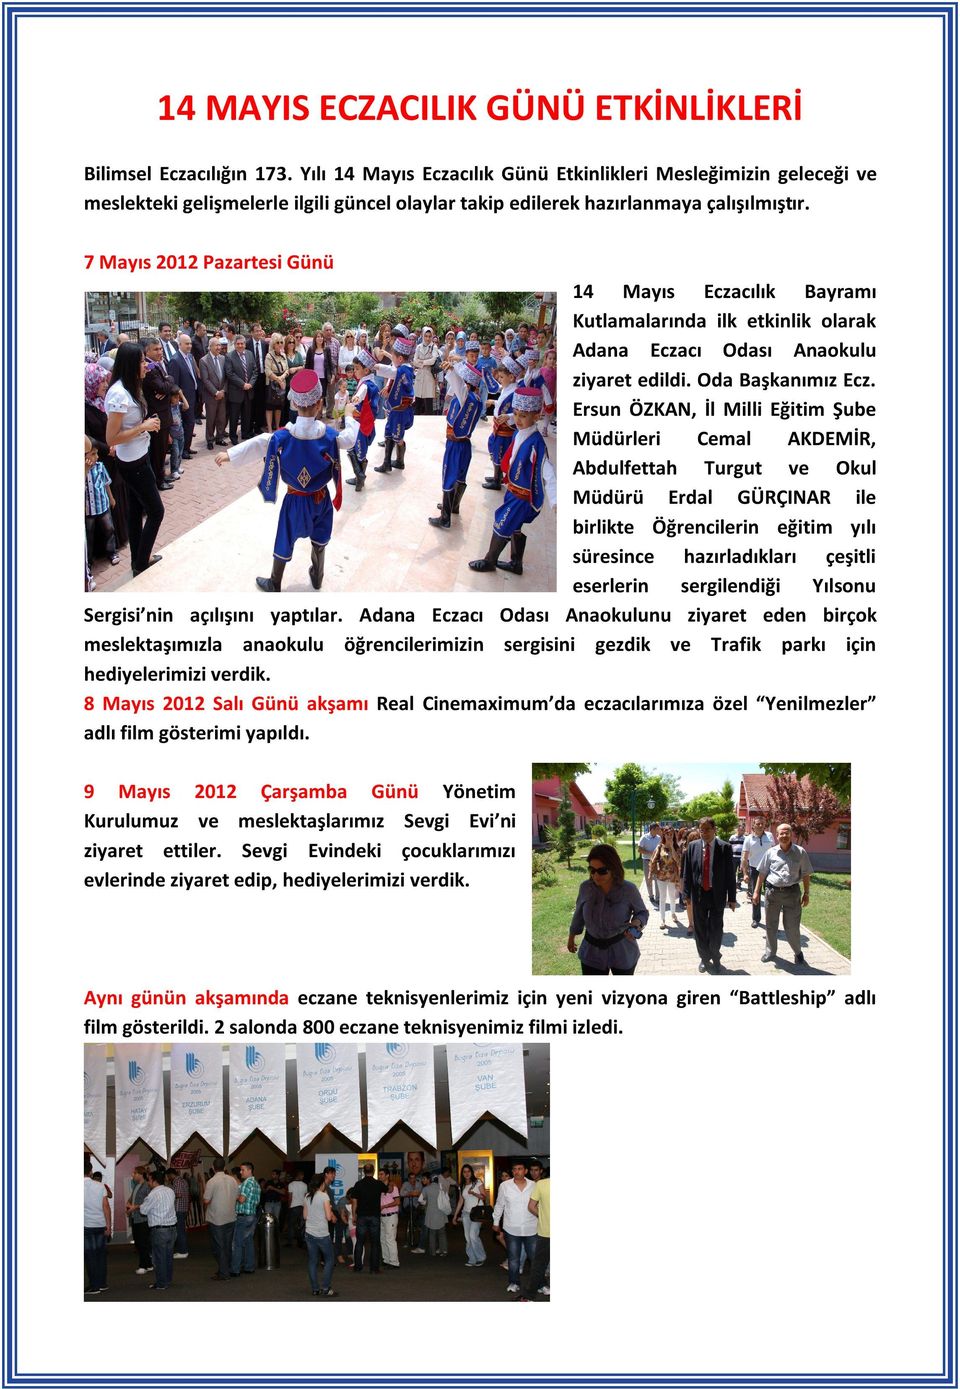 7 Mayıs 2012 Pazartesi Günü 14 Mayıs Eczacılık Bayramı Kutlamalarında ilk etkinlik olarak Adana Eczacı Odası Anaokulu ziyaret edildi. Oda Başkanımız Ecz.